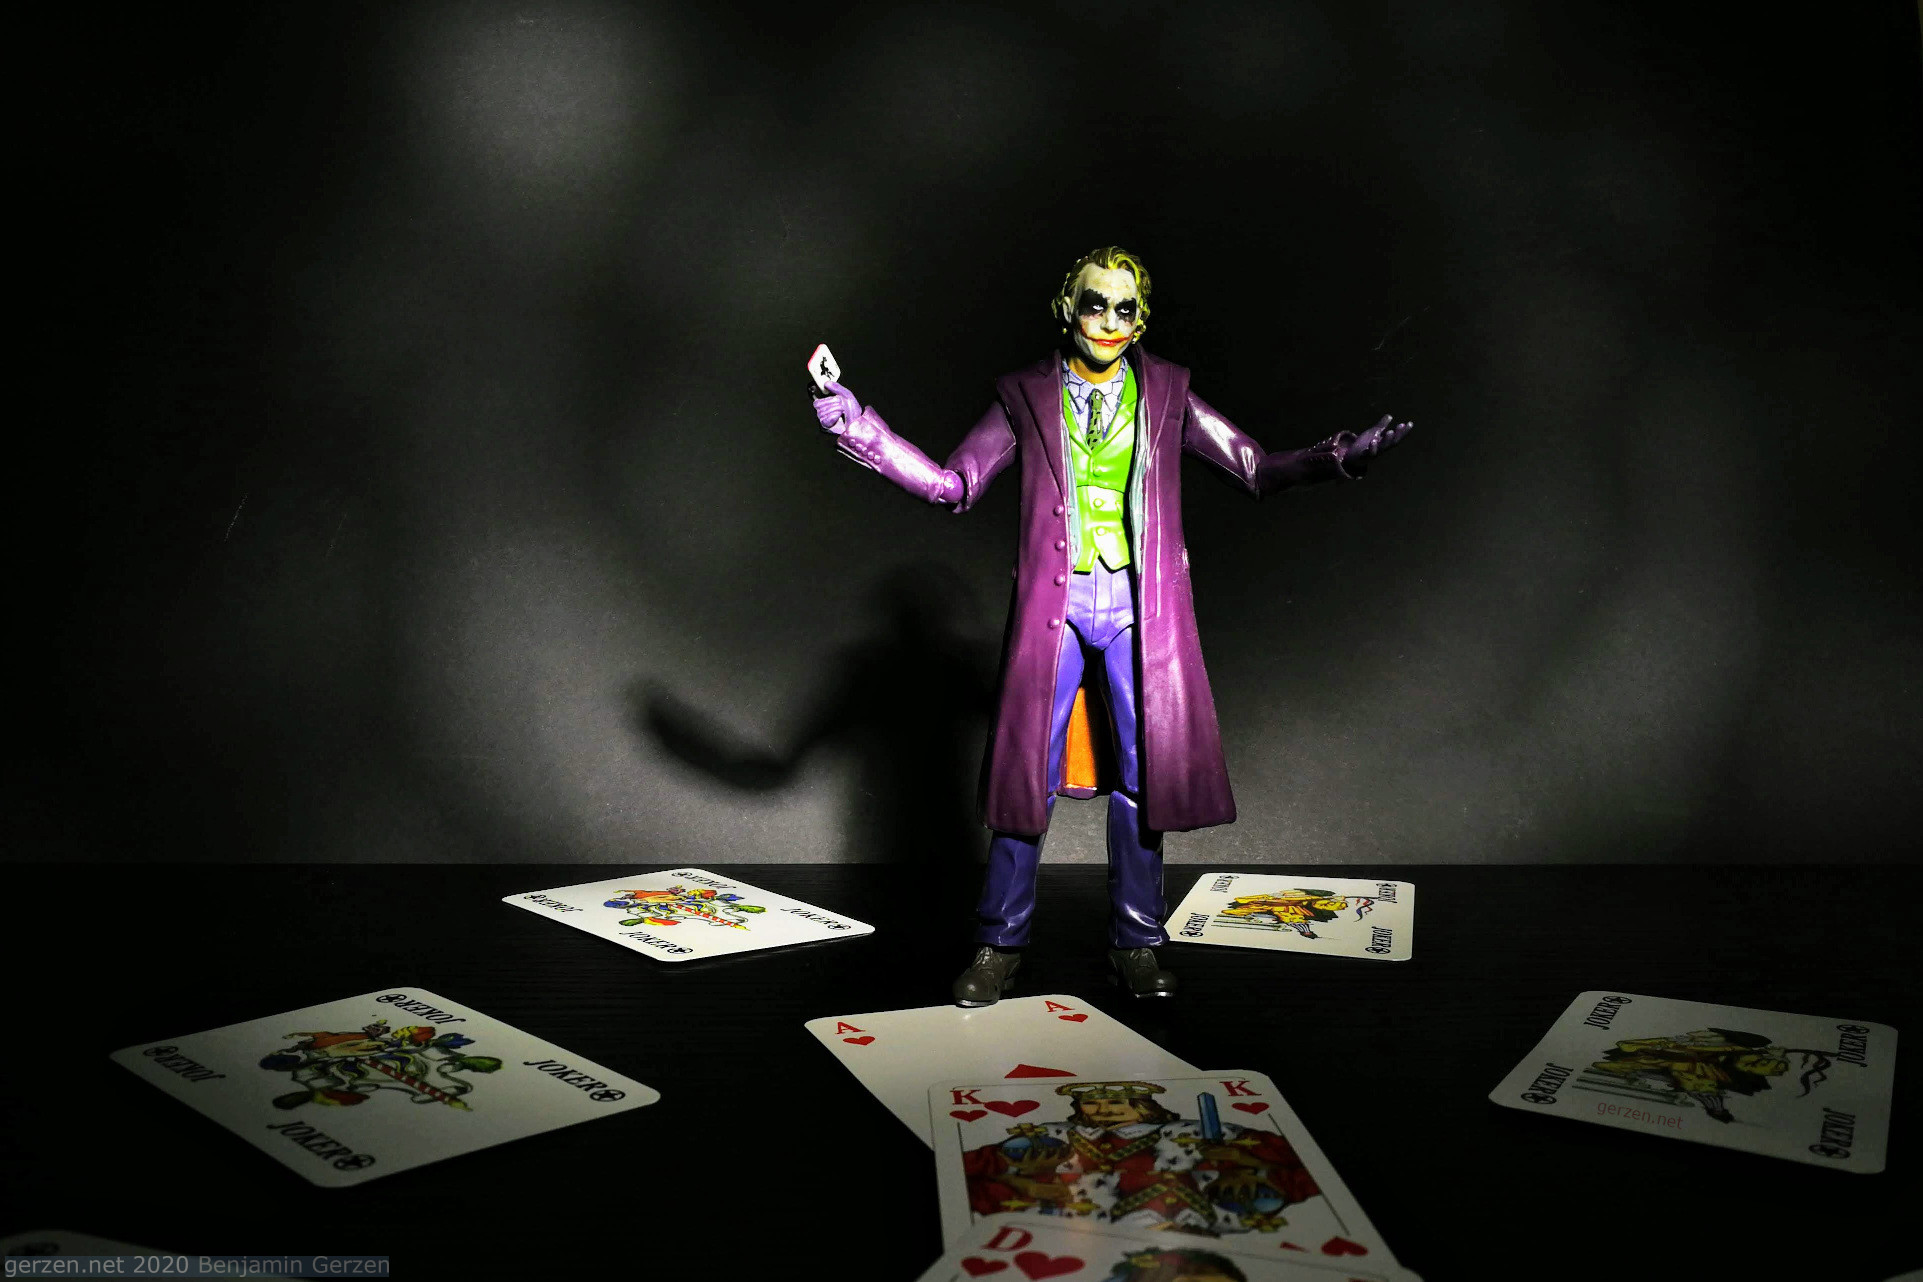 Meet the Joker